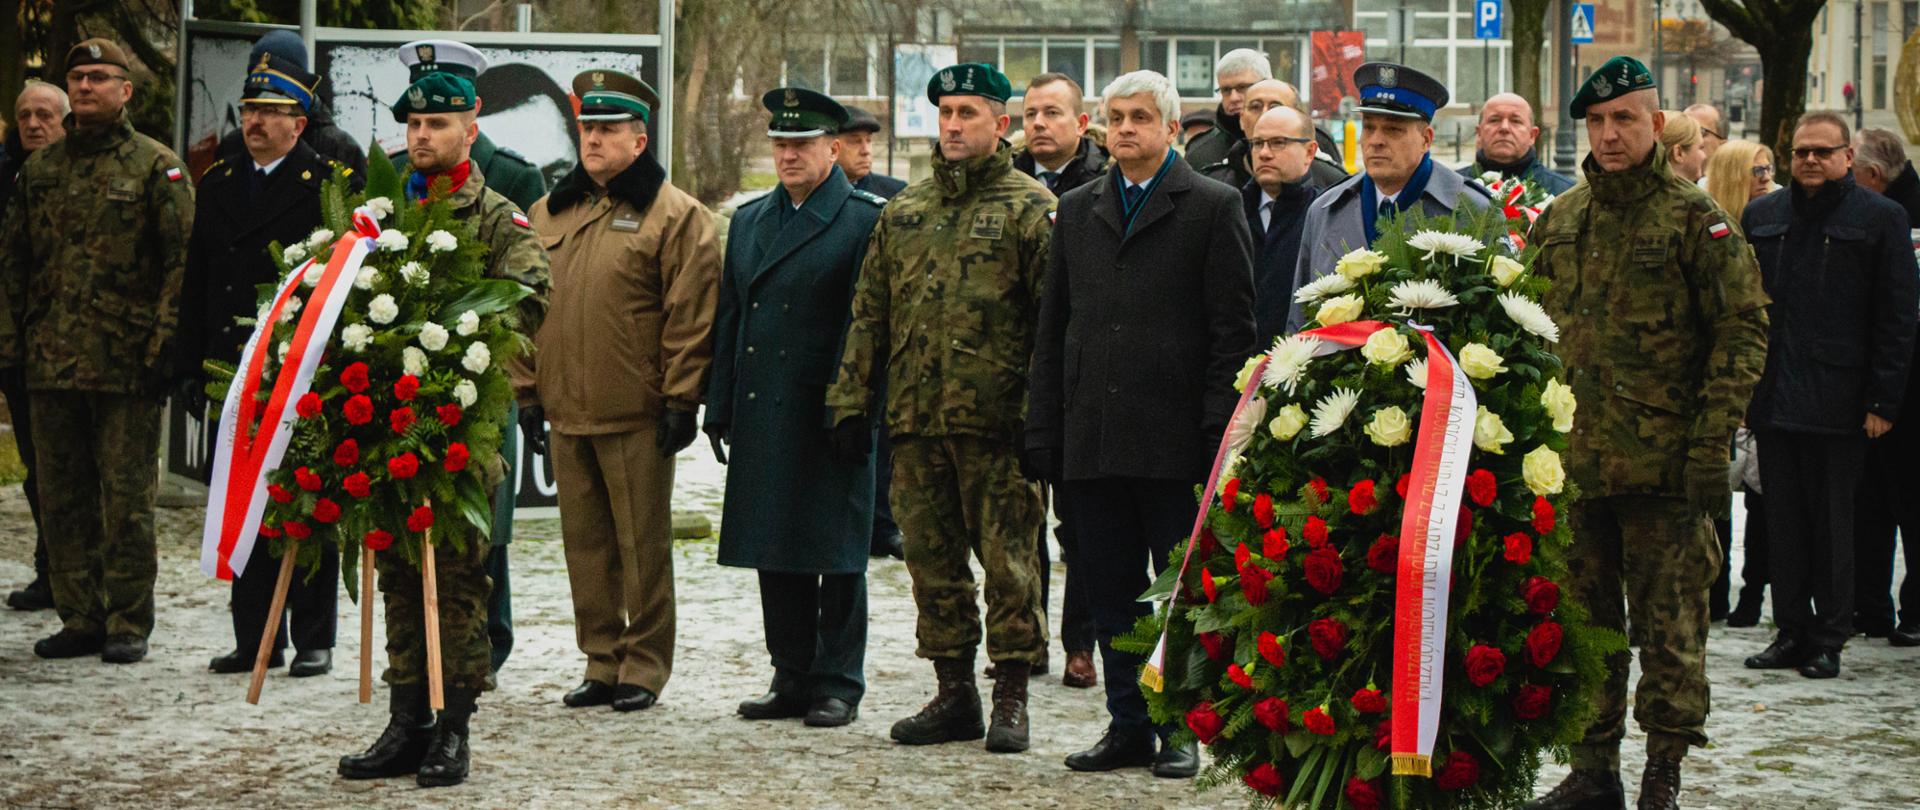 Uroczystości związane z 40. rocznicą wprowadzenia stanu wojennego w Polsce